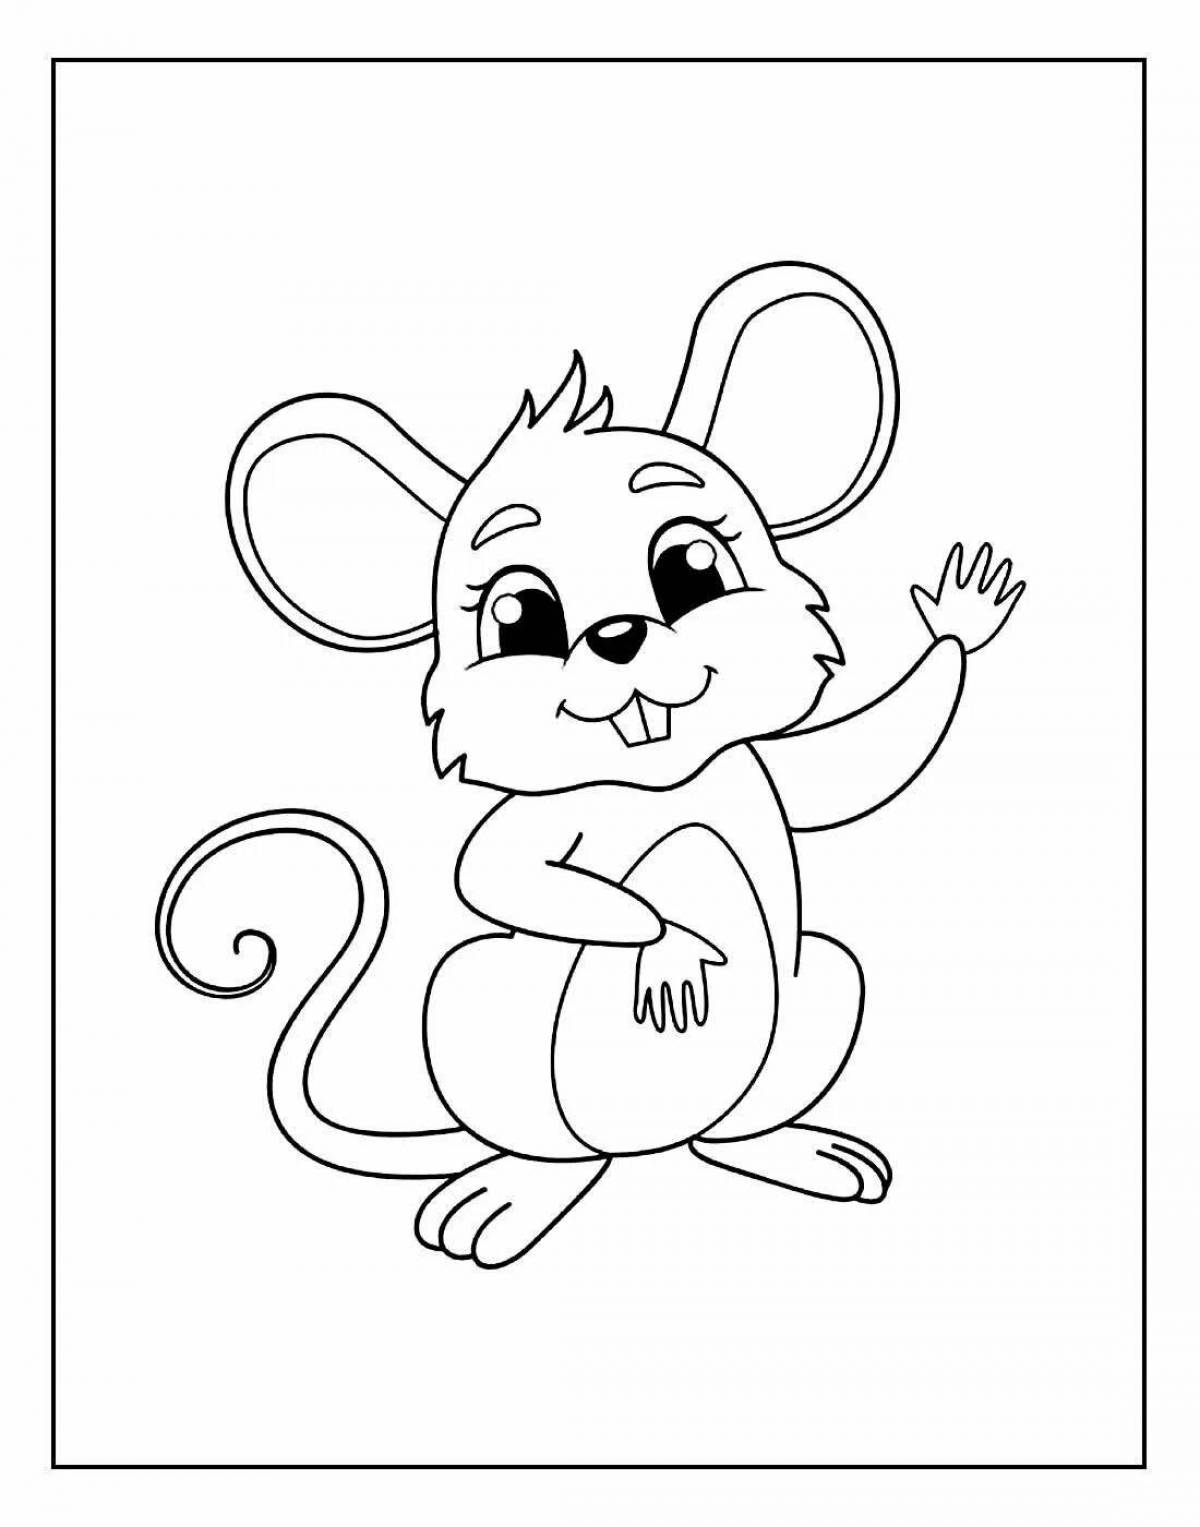 Классная раскраска мышь для детей 2-3 лет